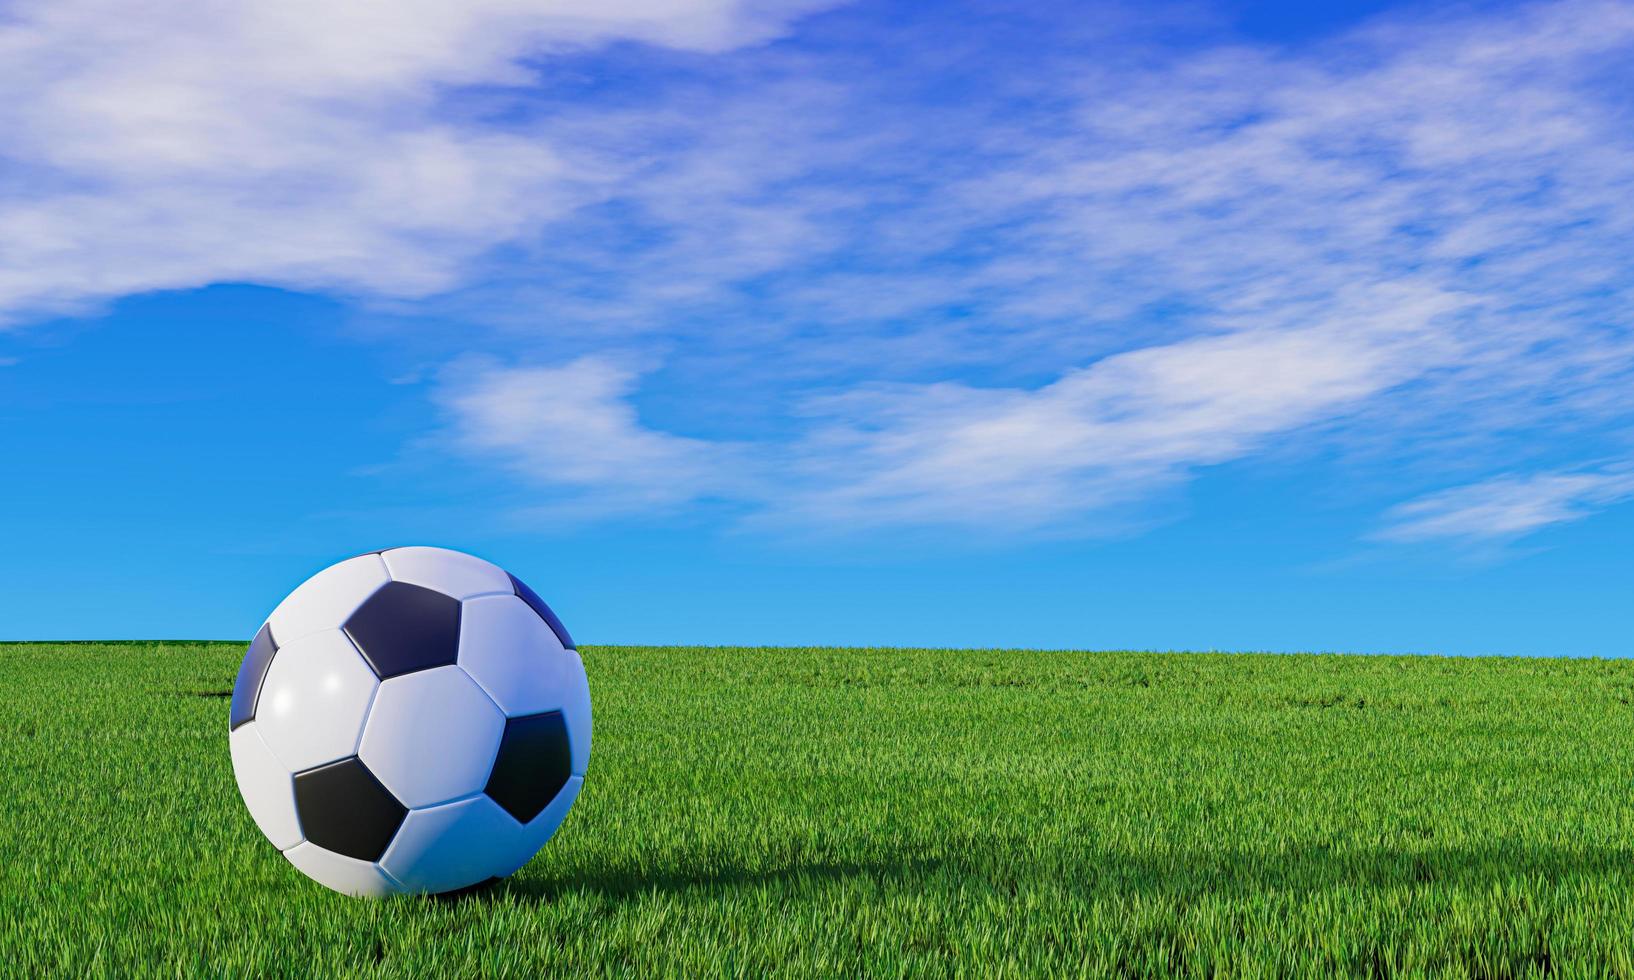 patrón estándar de fútbol colocado en la esquina para patear. los campos de fútbol tienen hierba verde fresca. estadio para partidos de fútbol en días soleados y brillantes. Representación 3d. foto